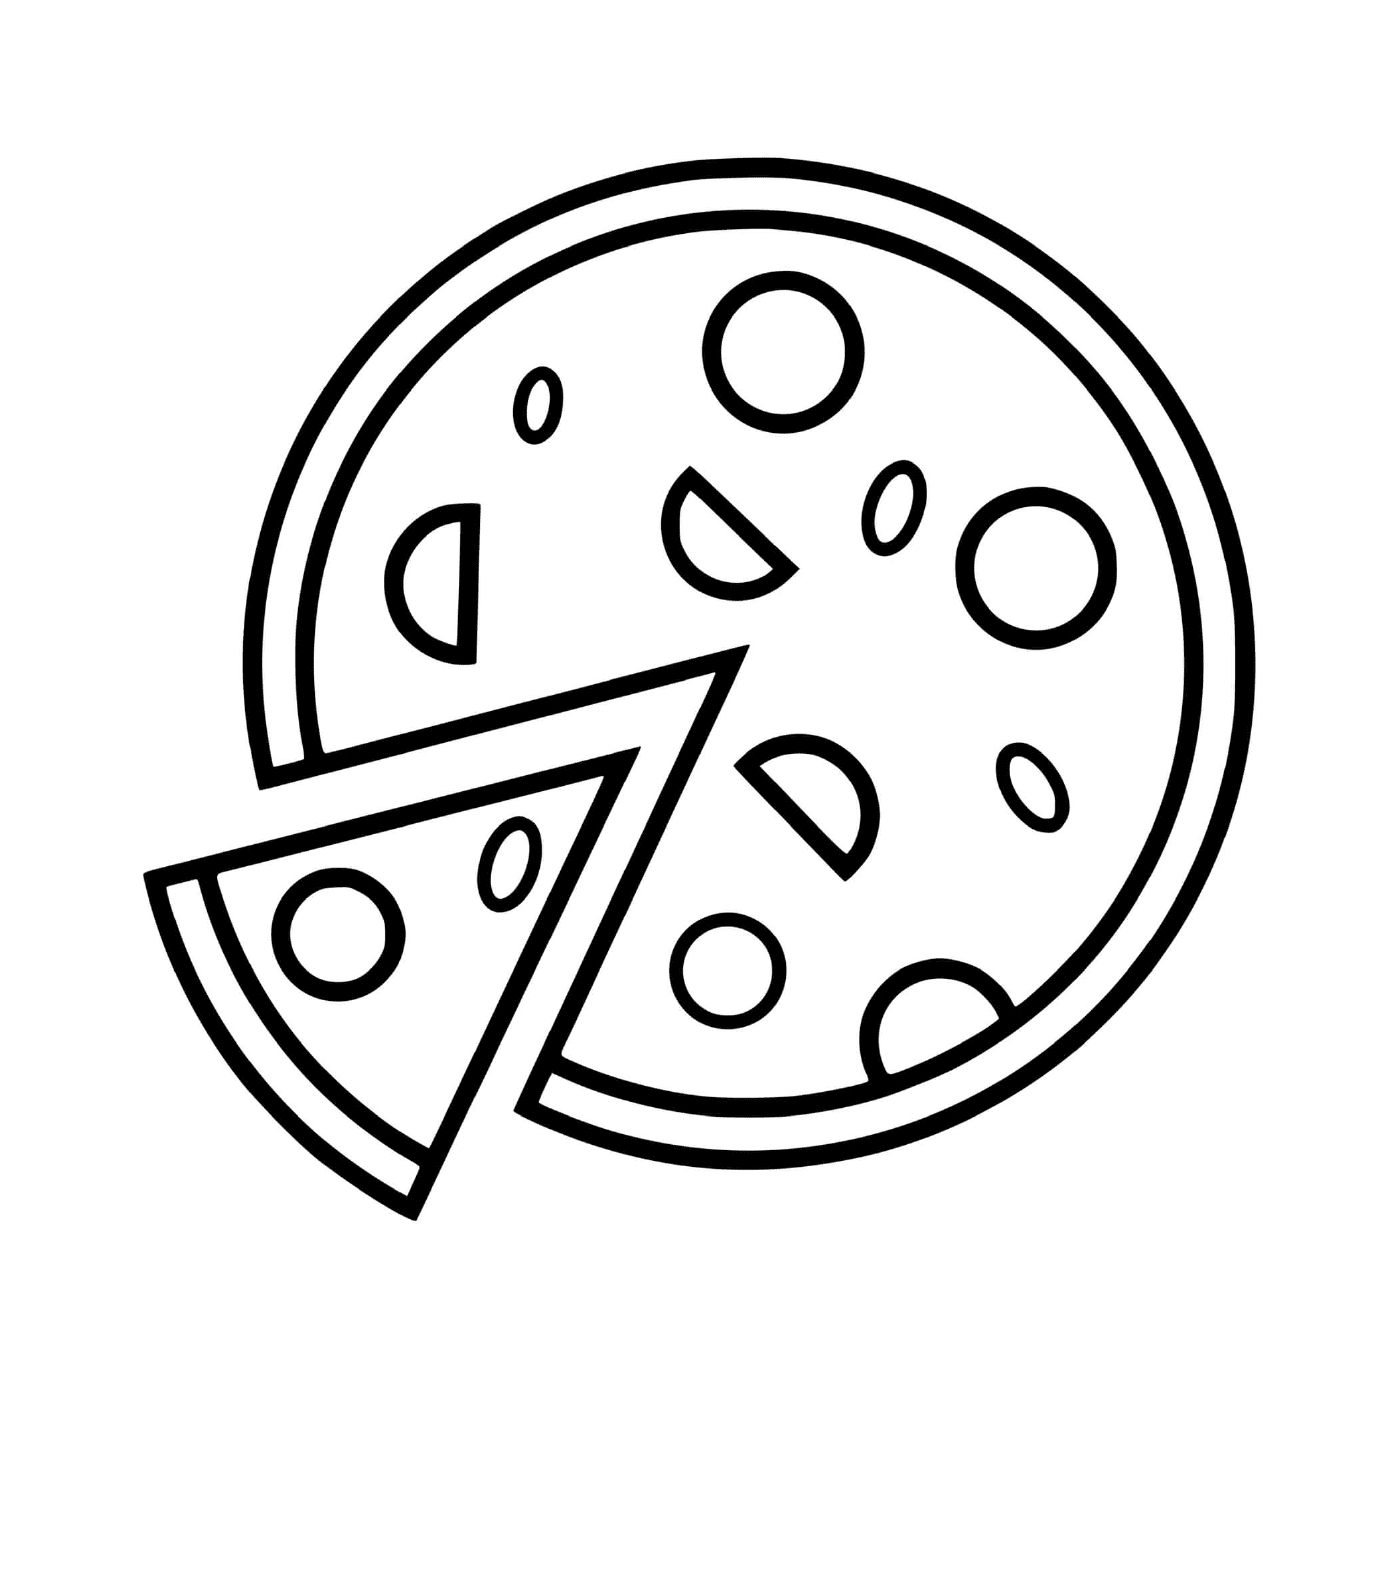  Simple pizza with tomato sauce and mozzarella 